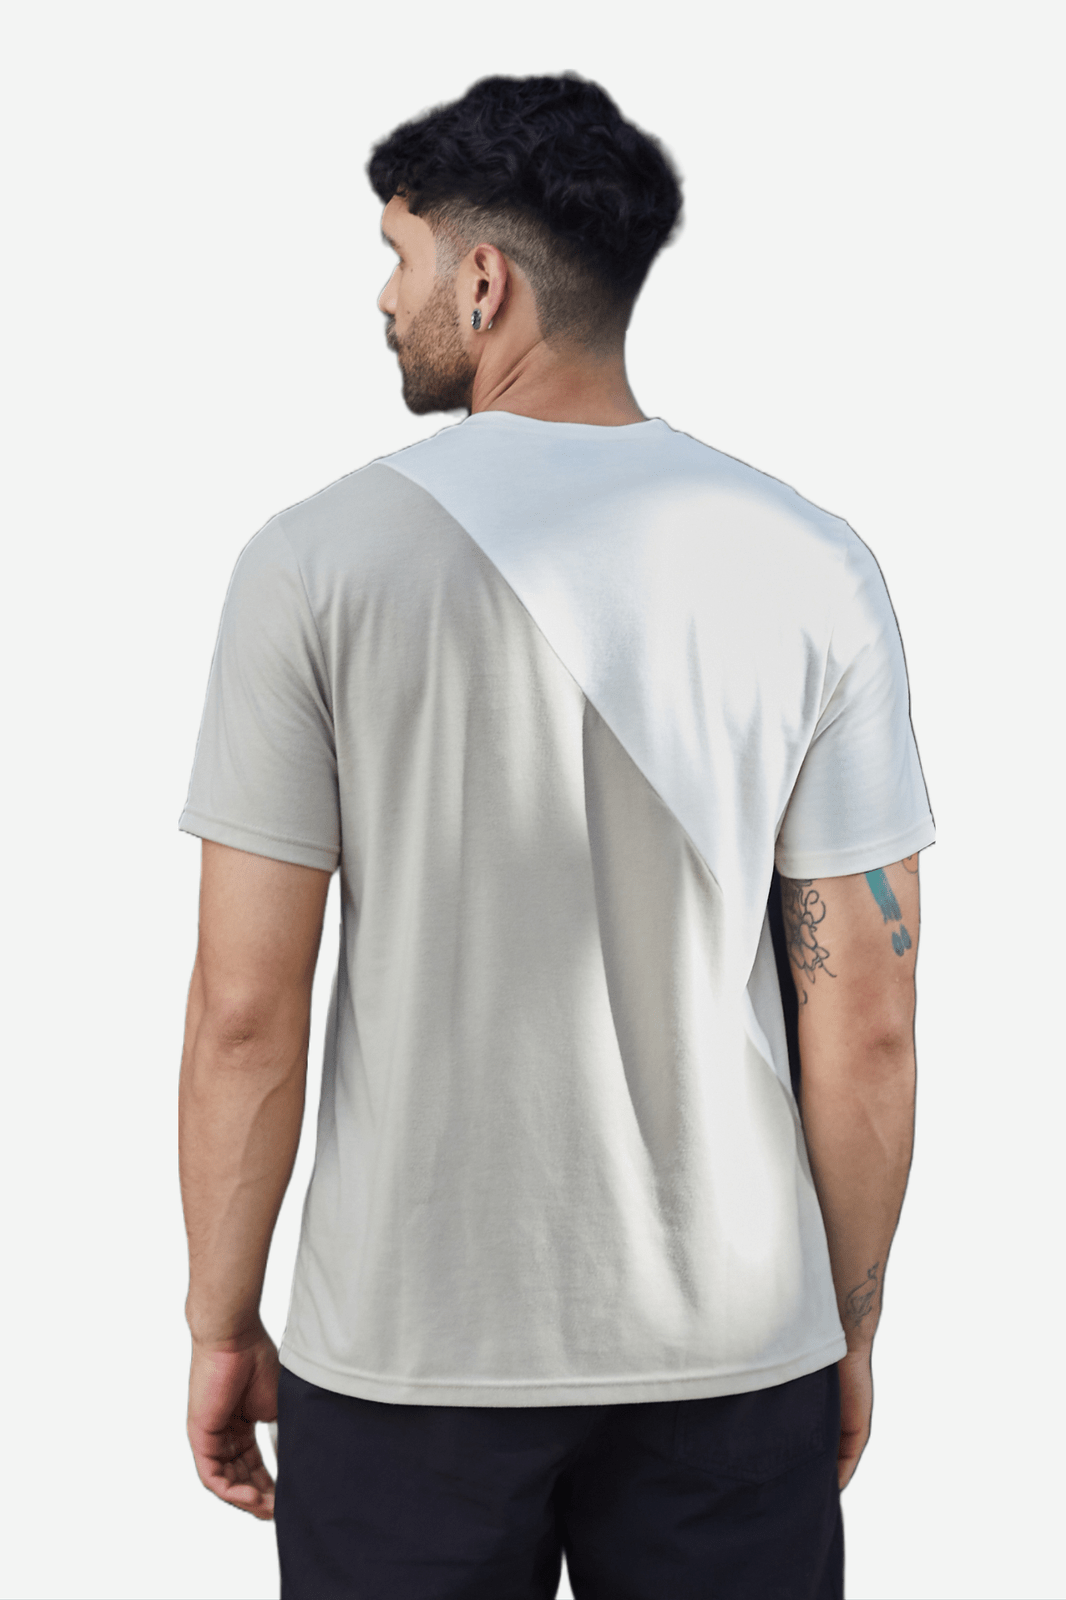 Camiseta blanca en bloques diagonales en contraste, cuello redondo y manga corta para hombre